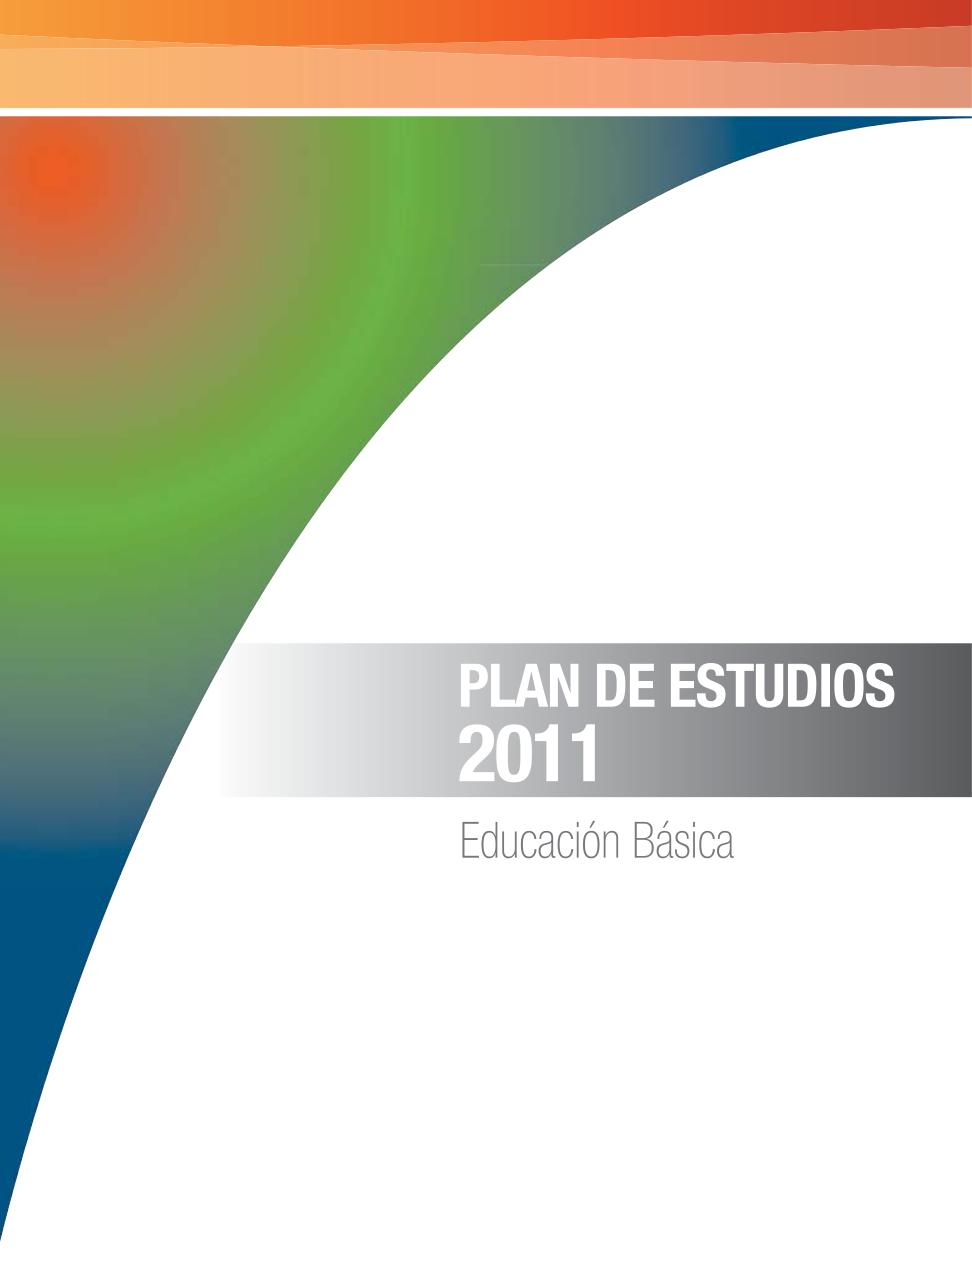 Vista previa del archivo PDF plan-de-estudios-2011-educacion-basica.pdf